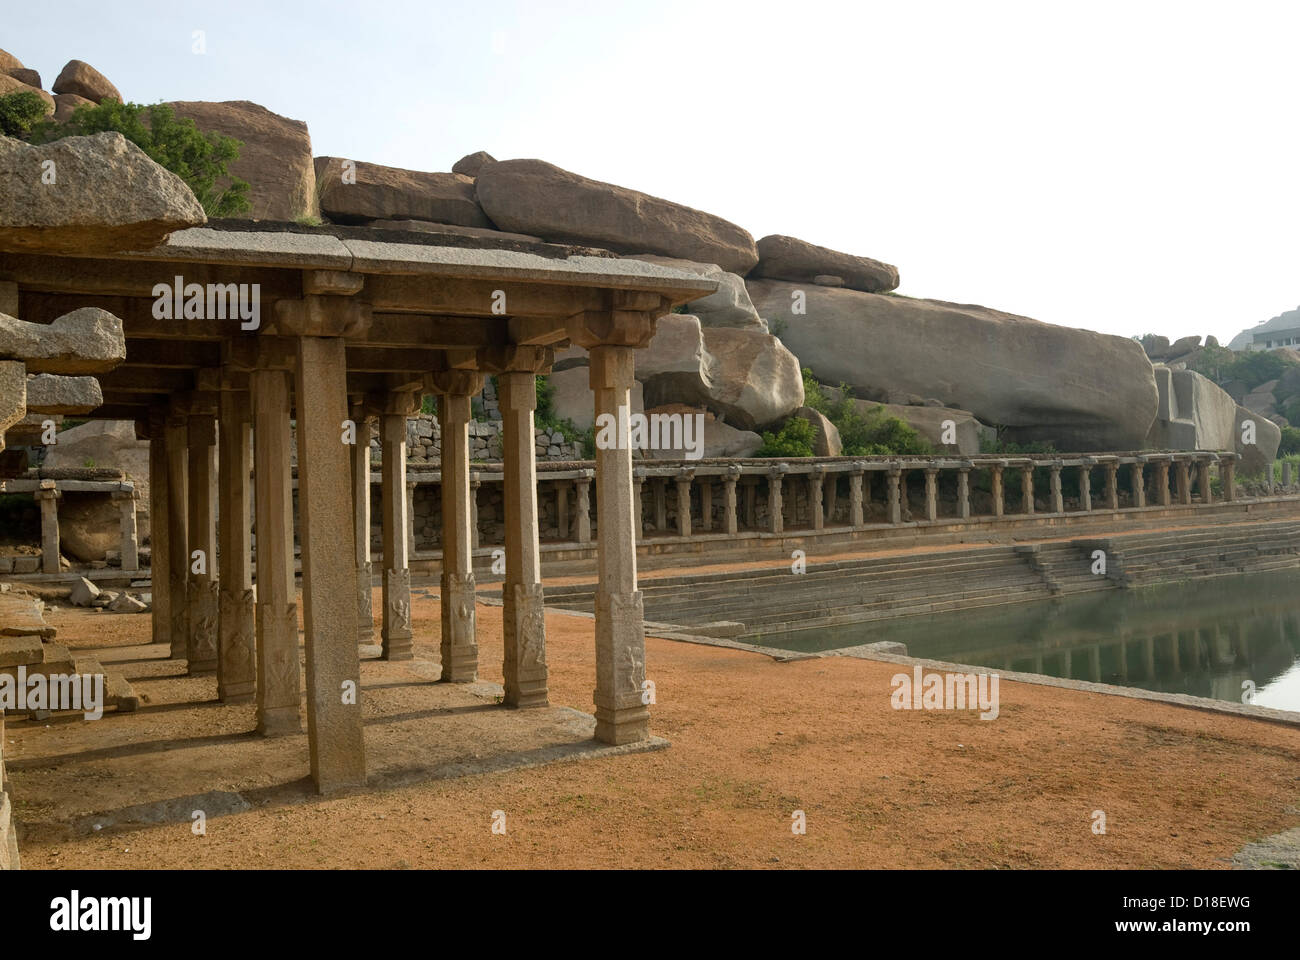 Pushkarni neben dem Krishna-Basar in Hampi, Karnataka, Indien Stockfoto